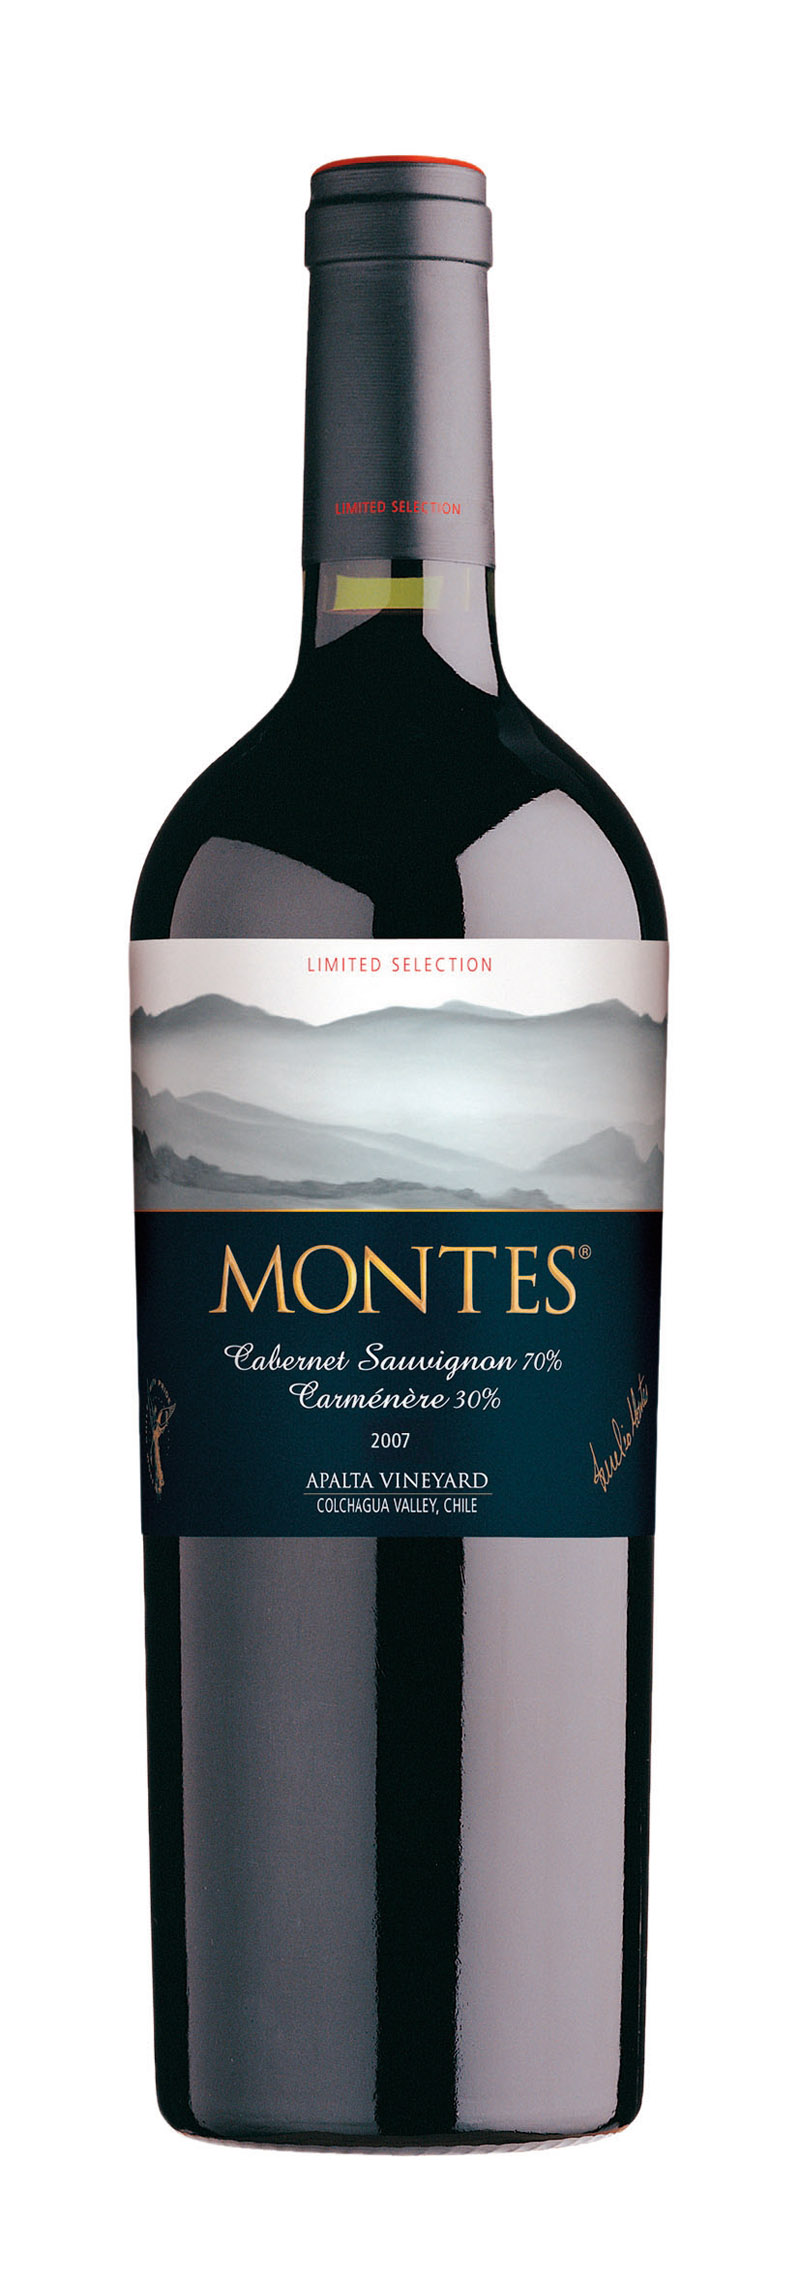 MoNtes Selection Cabernet/CarmenÈre, R$ 49, Mistral Para quem gosta de um vinho mais encorpado e não muito seco, esta é uma dica perfeita. Vai muito bem com carnes de caça e molhos densos